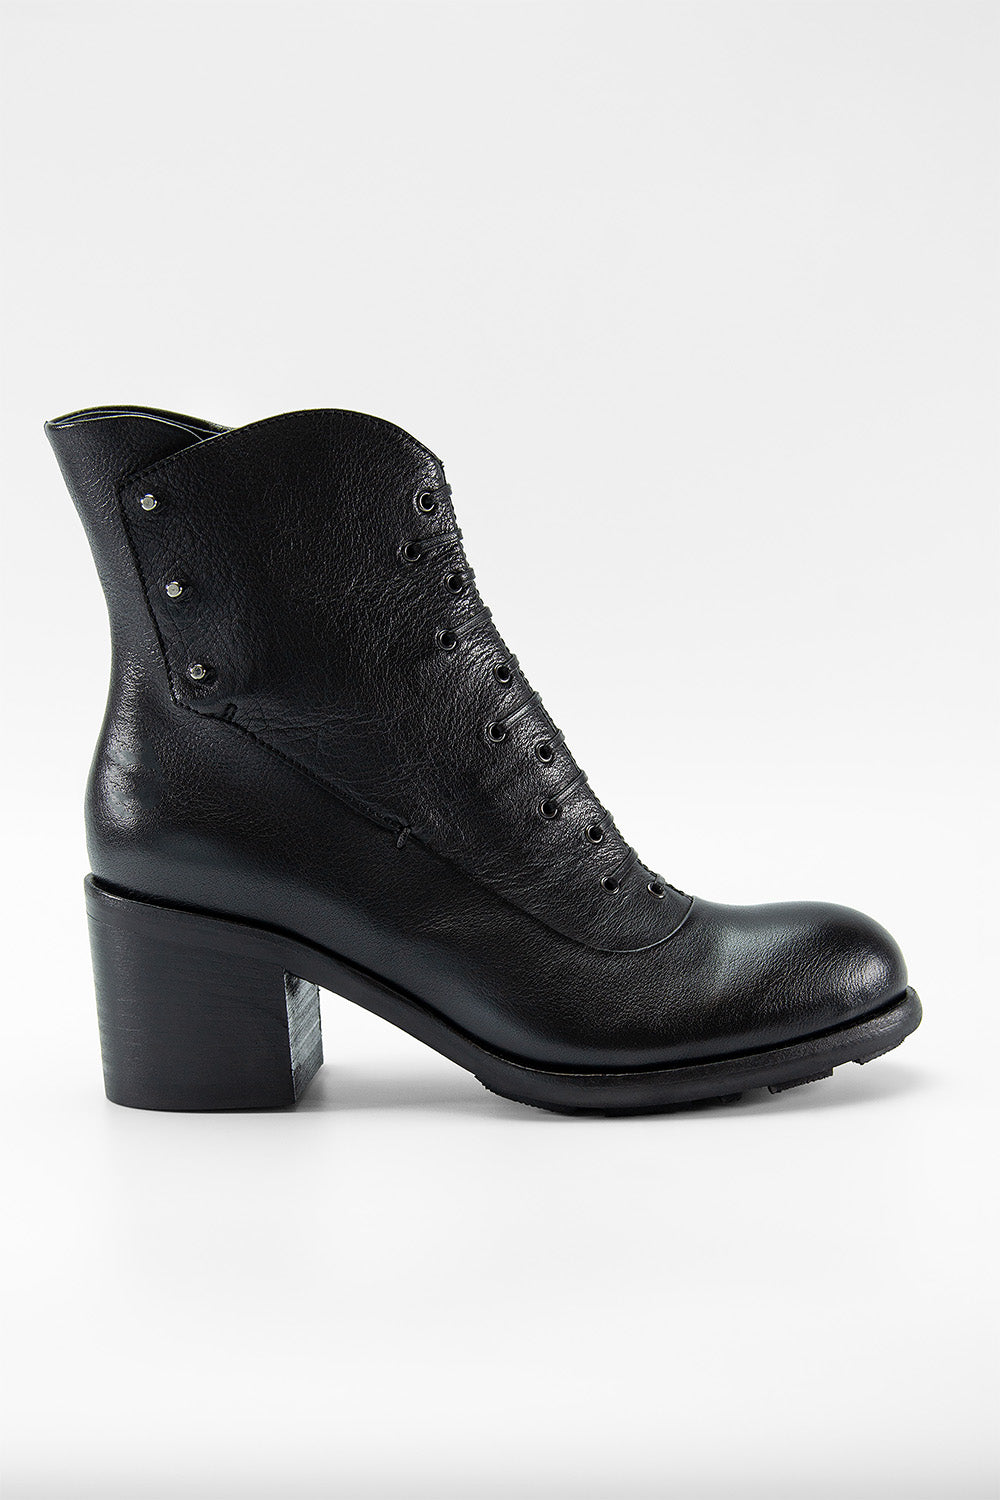 UNTAMED STREET Women Black Buffalo-Leather Mid-Heel Boots BERKELEY